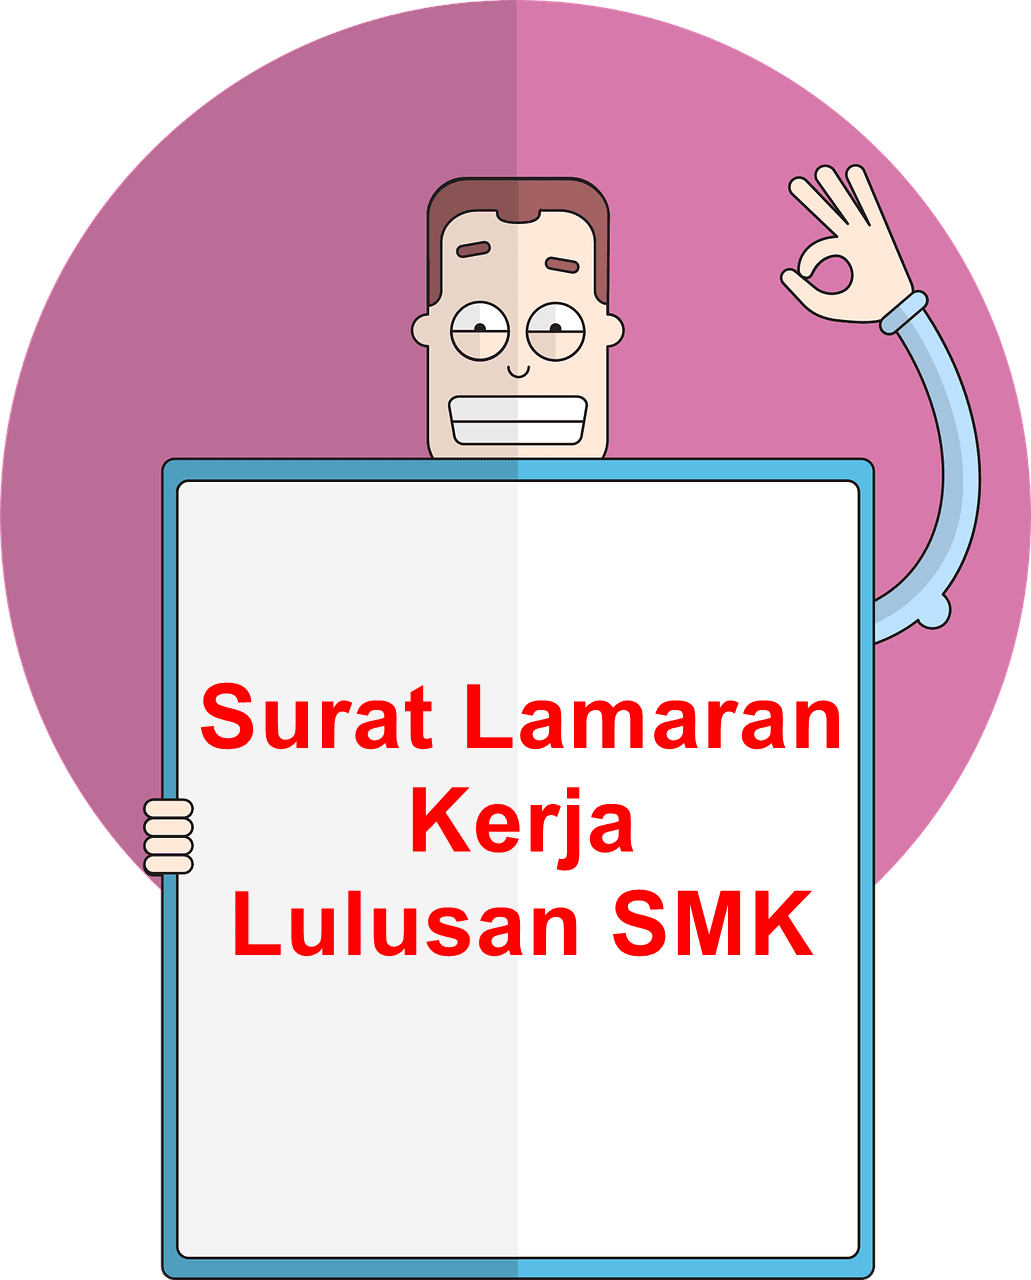 Contoh Application Letter Lulusan SMK Yang Baik Dan Benar